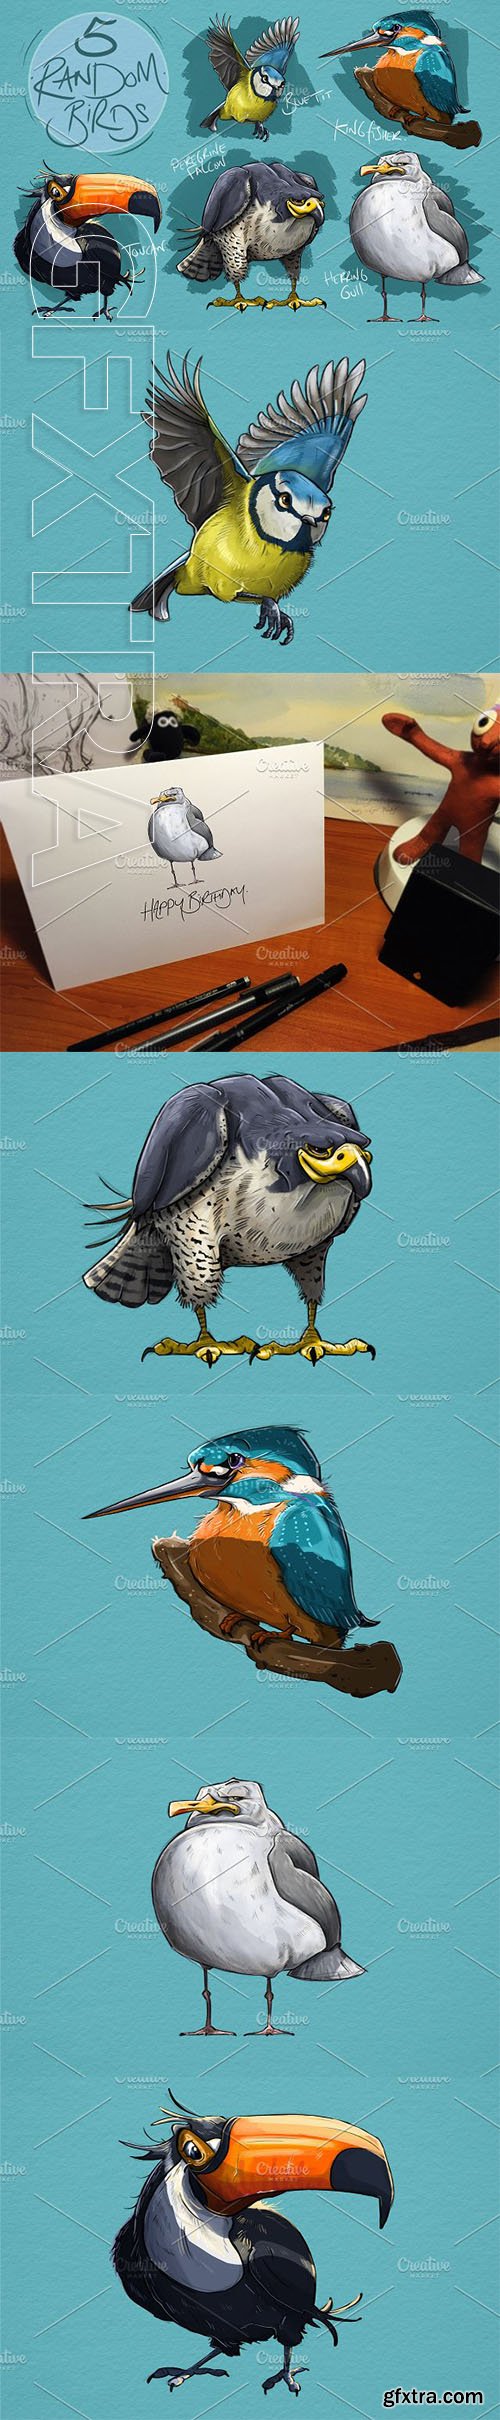 CreativeMarket - 5 Random Bird Cartoons 2443985